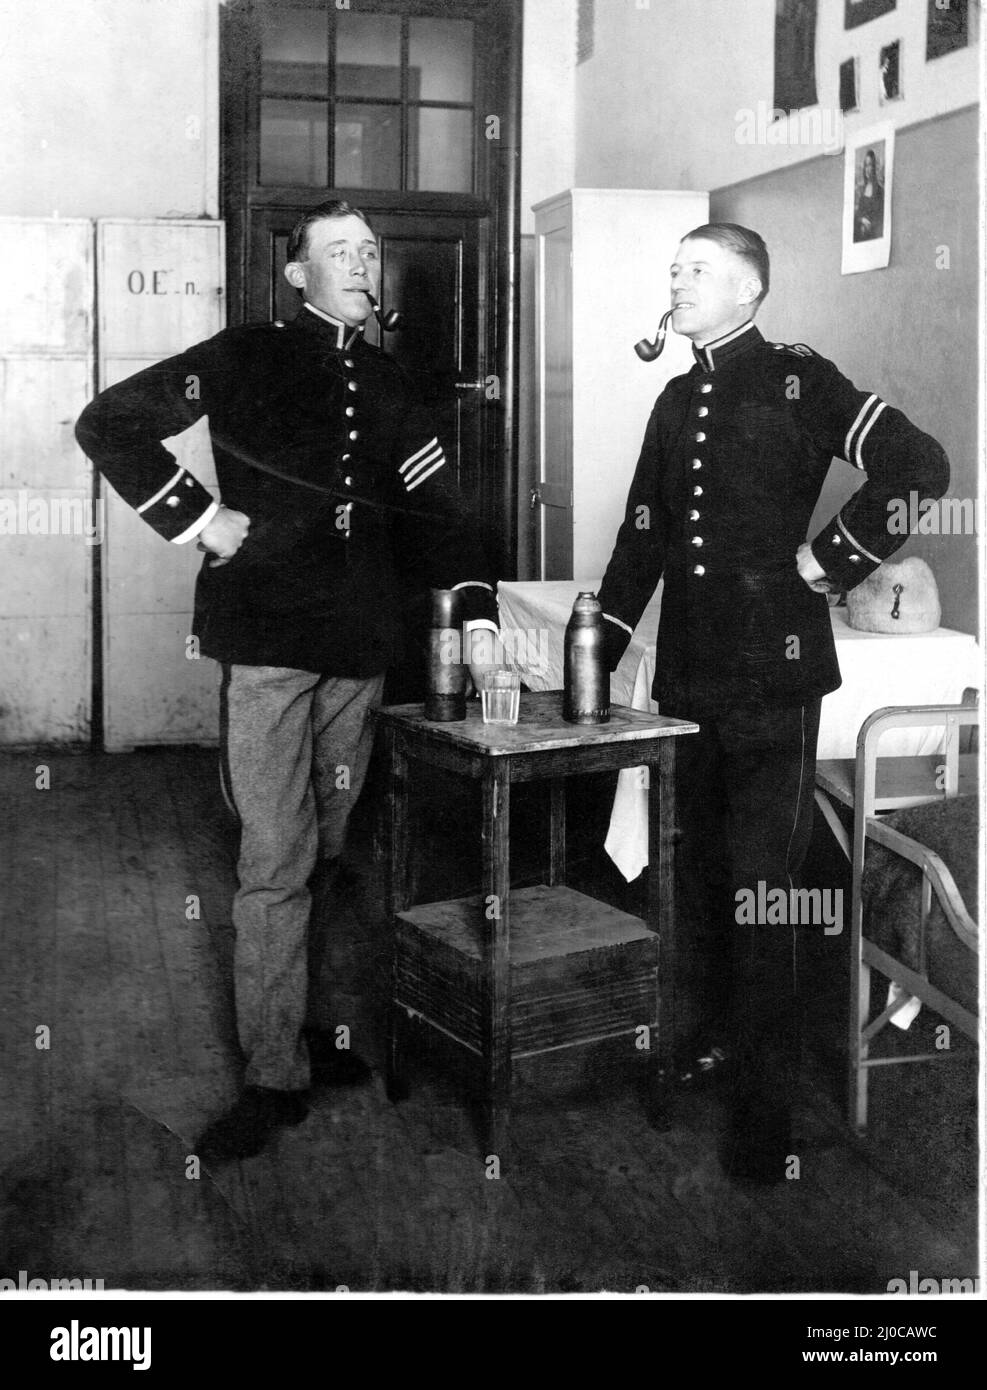 Authentisches Vintage-Foto von zwei Soldatenhänden auf Hüften, die Pfeifen rauchen, die neben Trinkflaschen auf dem Tisch stehen, Schweden. Konzept der Zweisamkeit Stockfoto